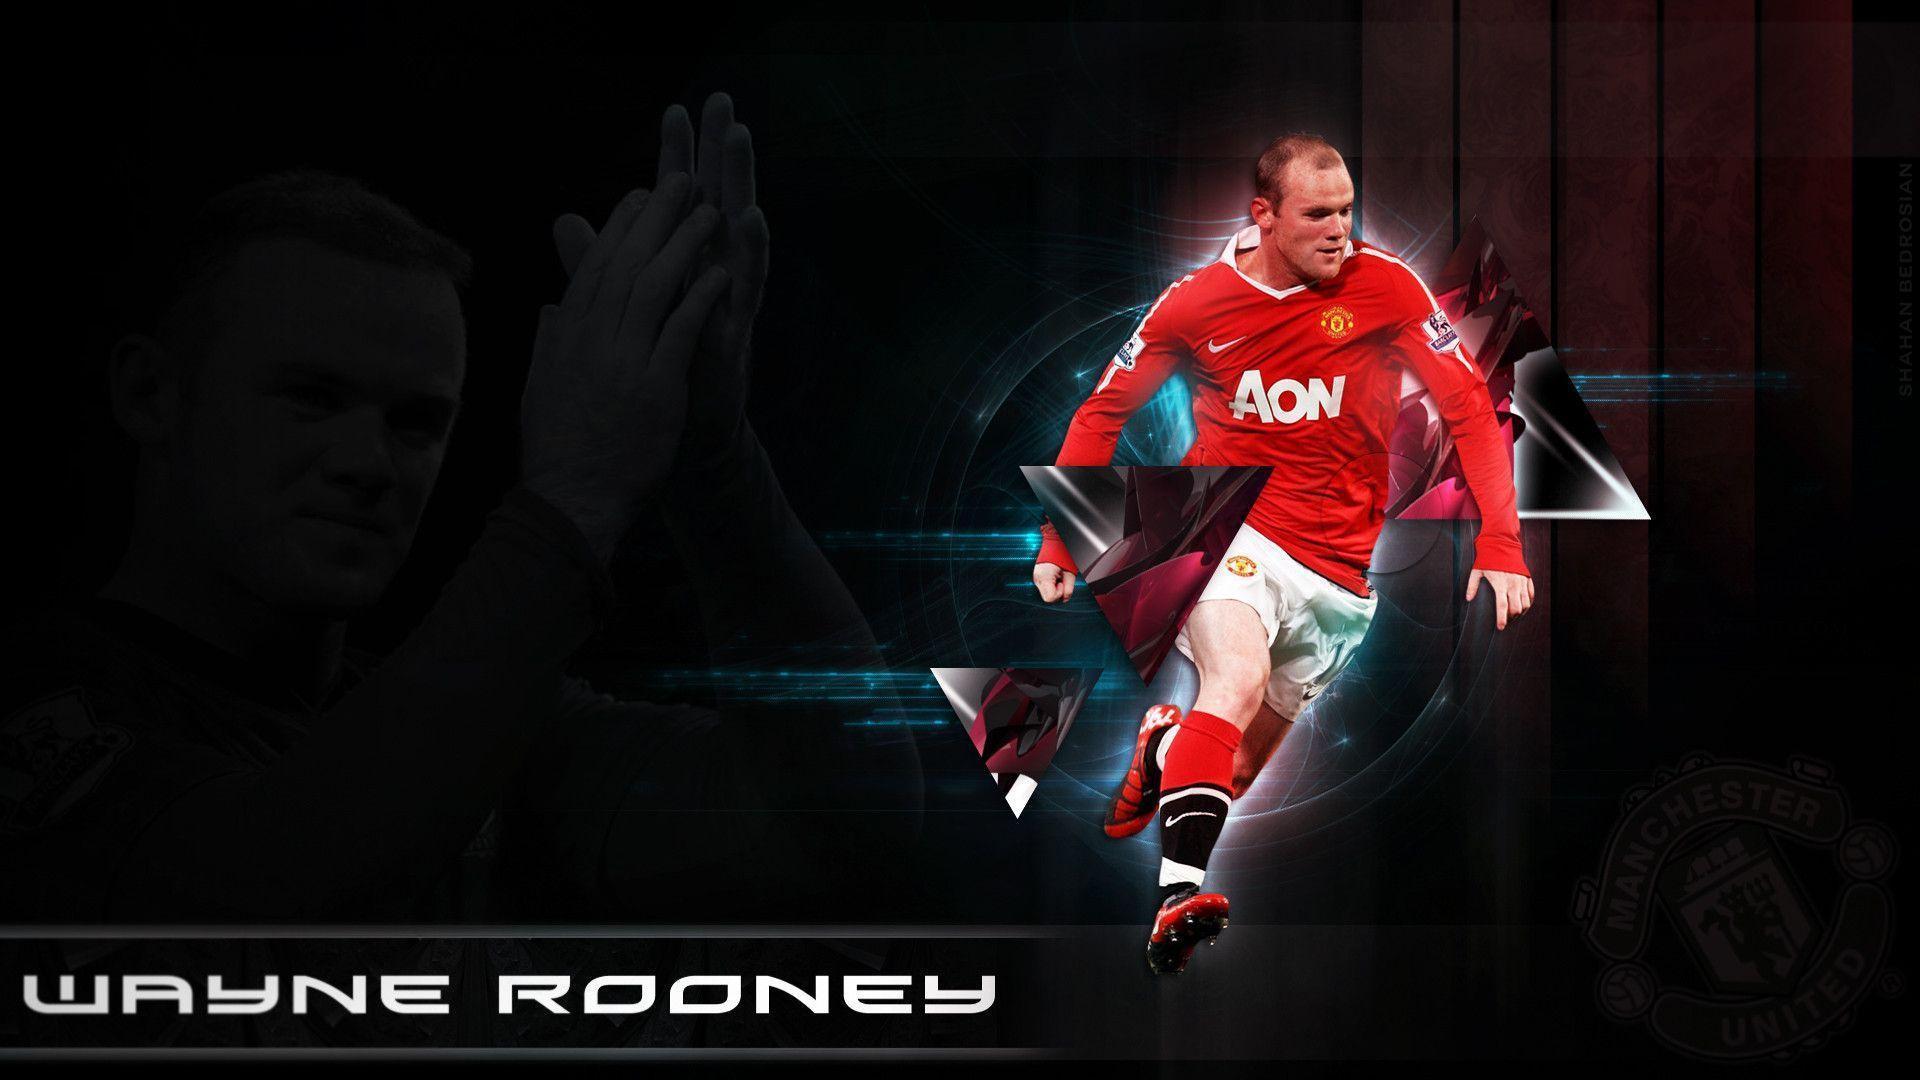 Rooney Desktop Wallpaper. Wayne Rooney Image